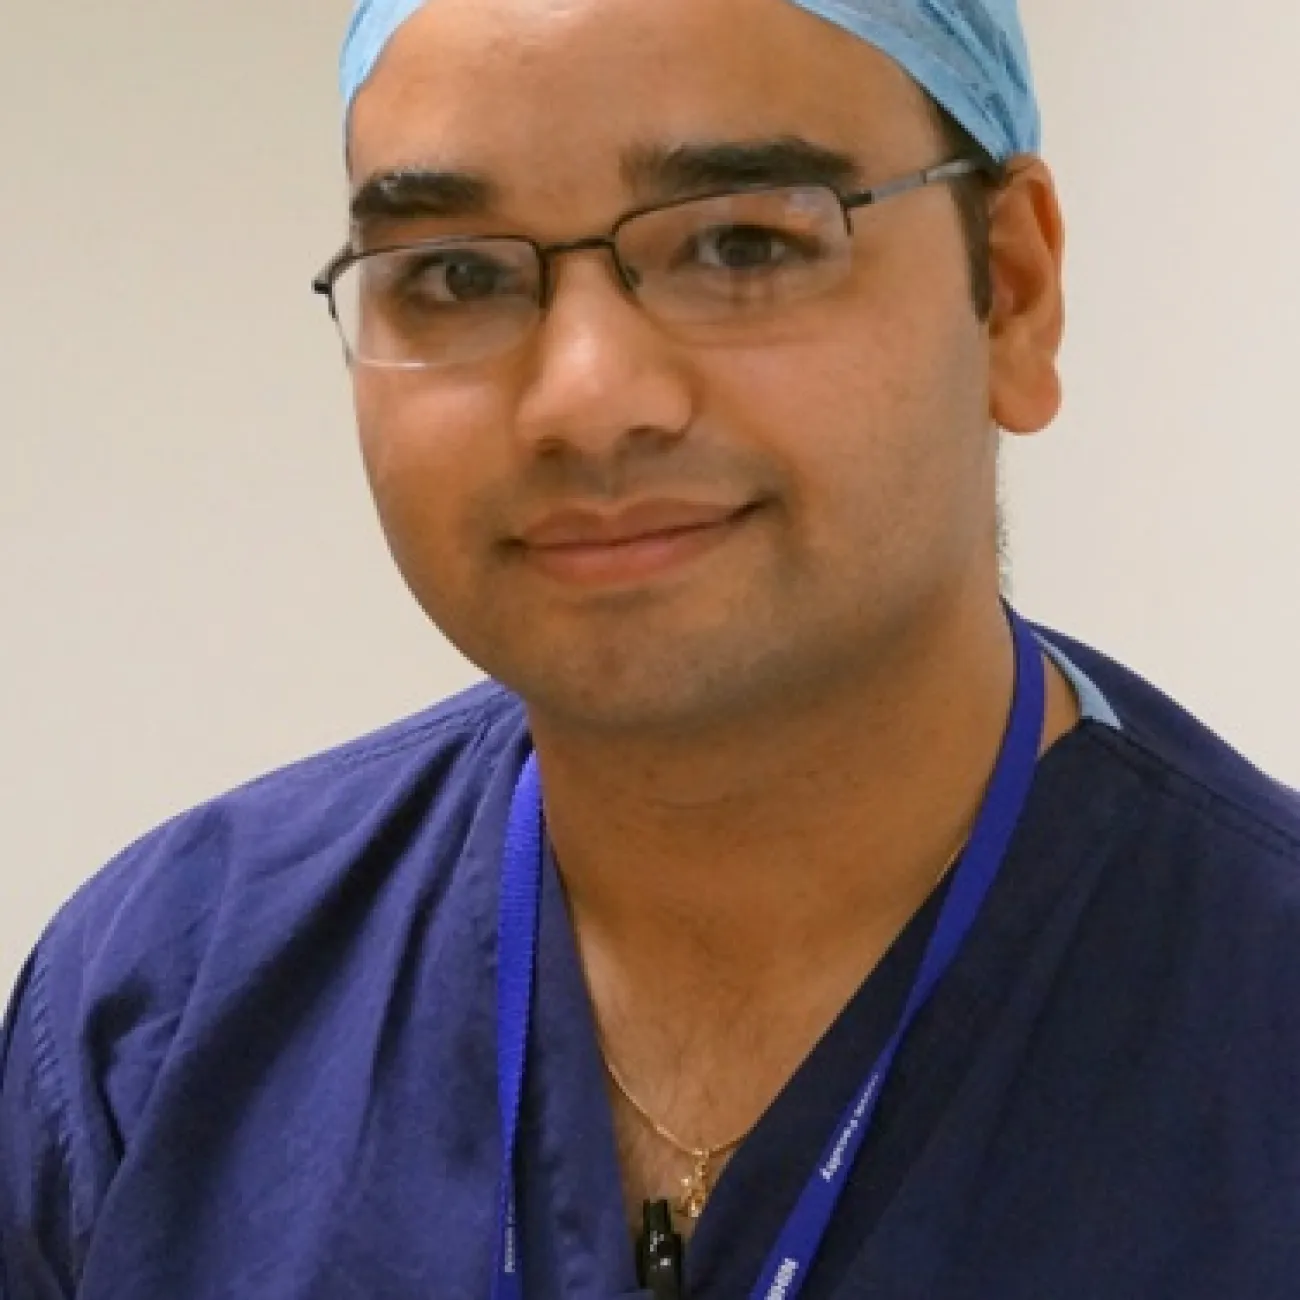 Doctor Rahul Bhome